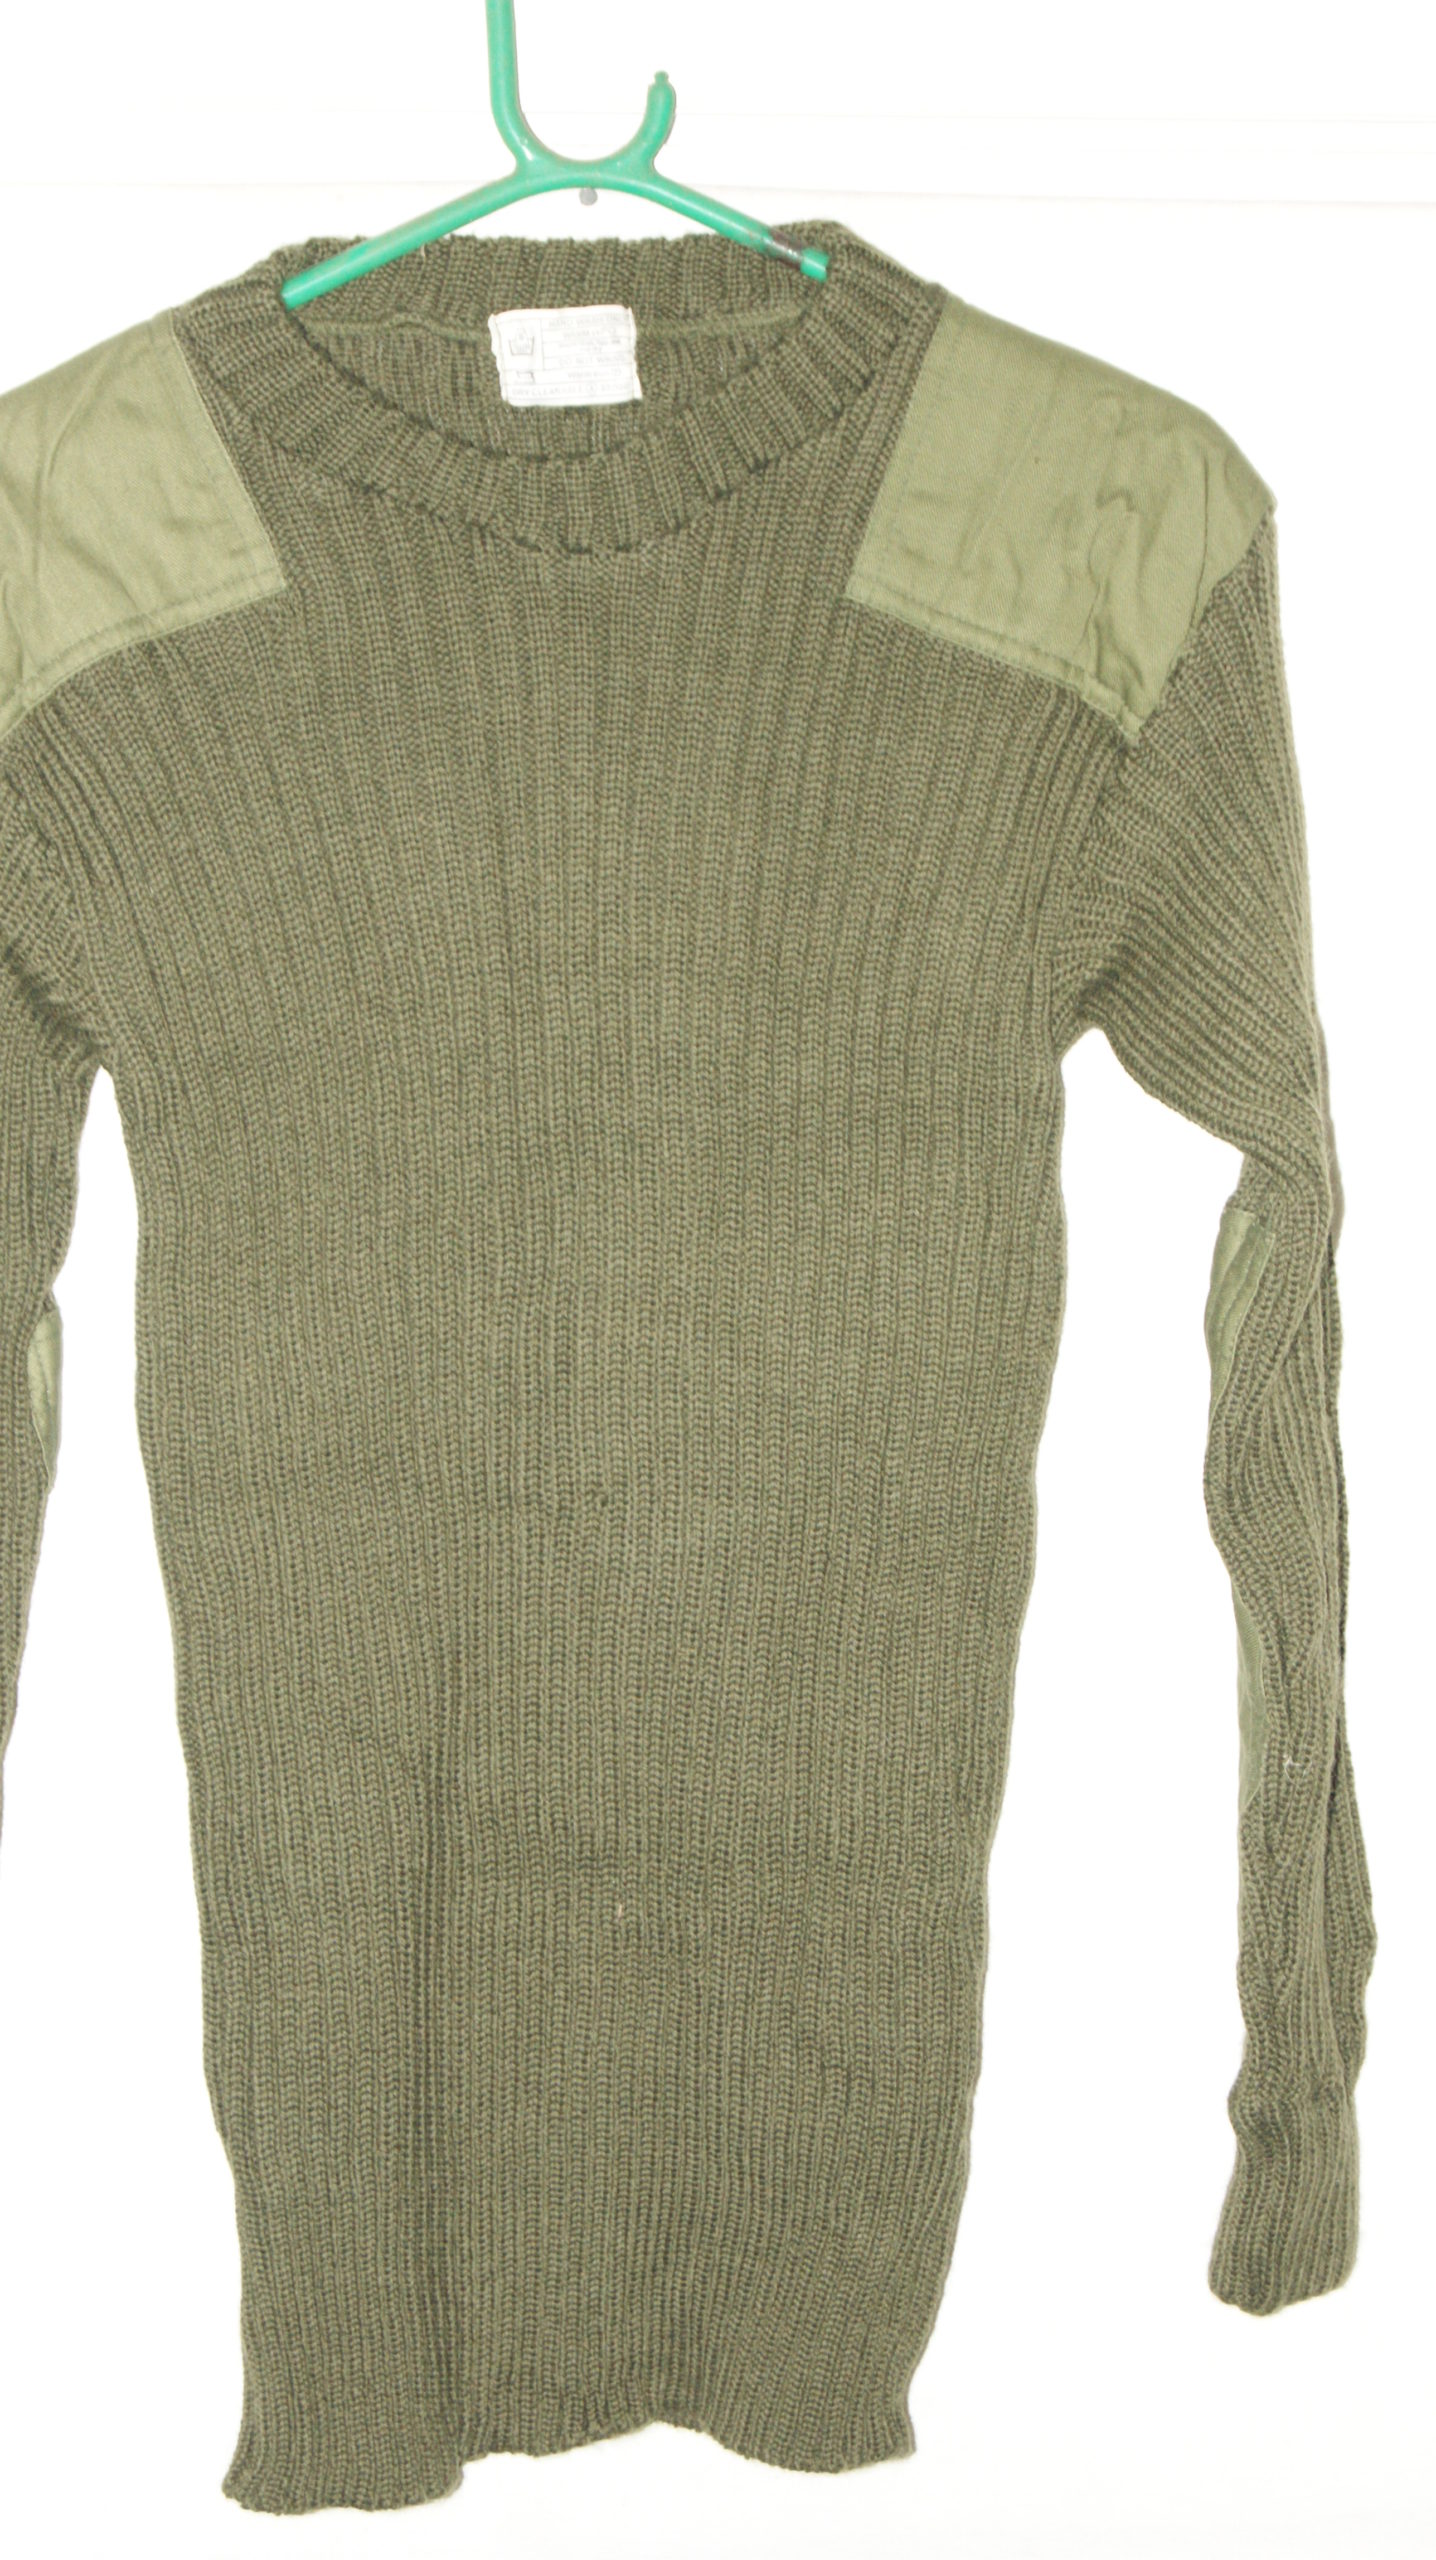 1968 Pattern Dpm Suit Complete Jacket, Trousers,Cap,Shirt,Gilet,Jumper ...